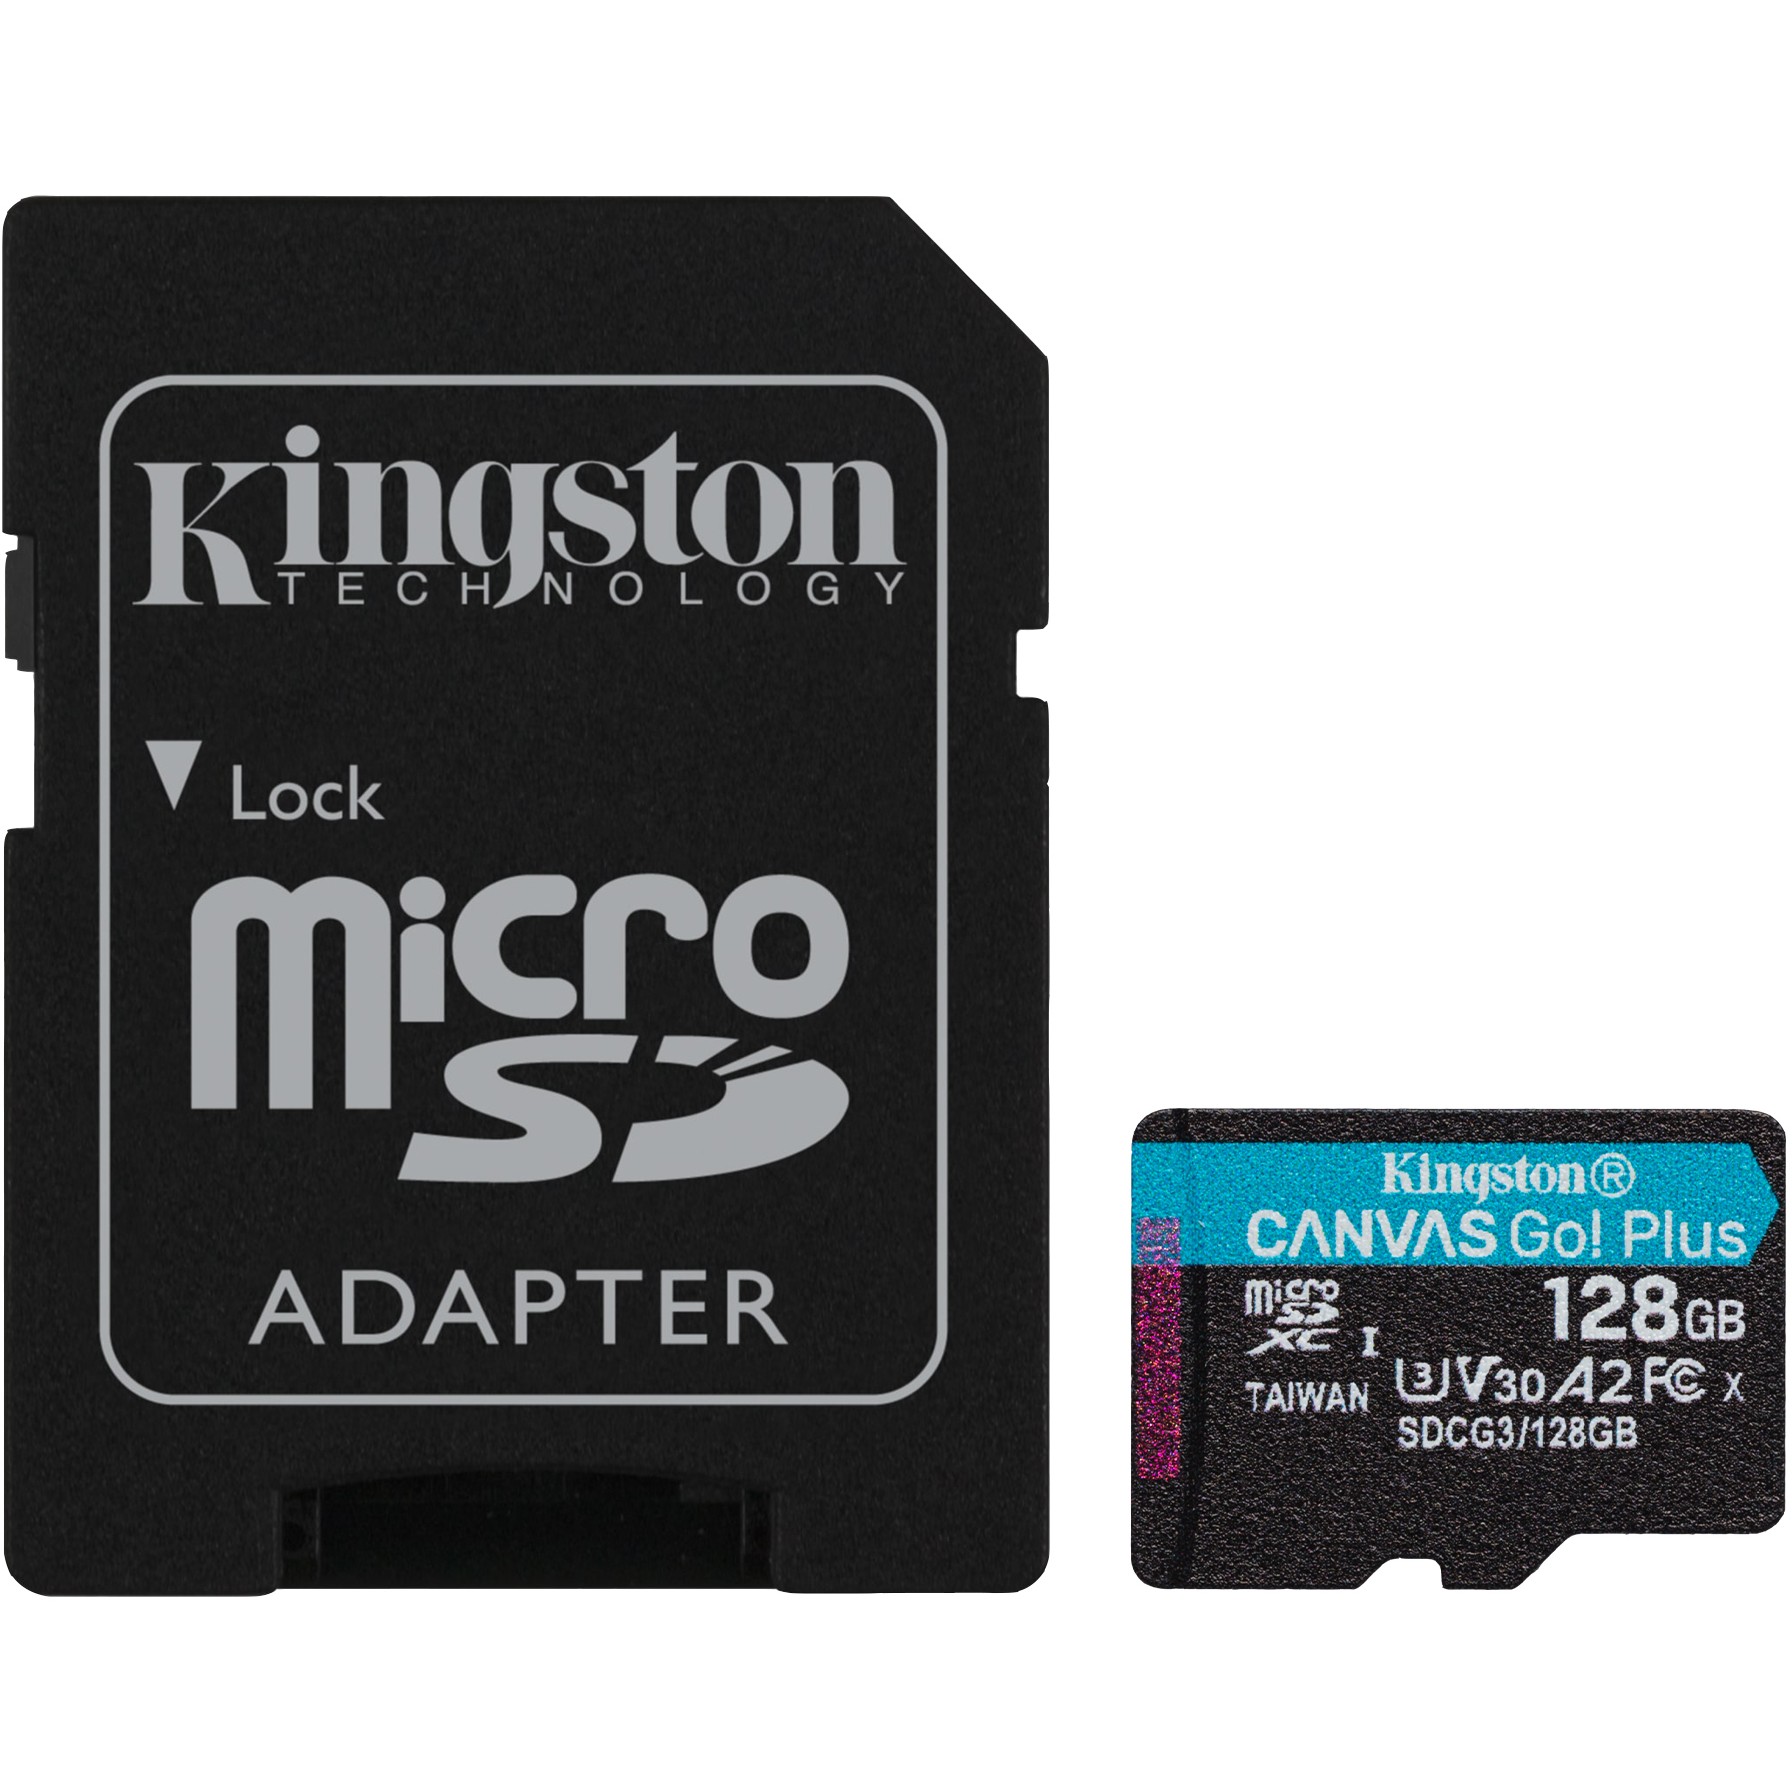 Kingston SDCG3/128GB, SD-Karten, Kingston Technology Go!  (BILD1)